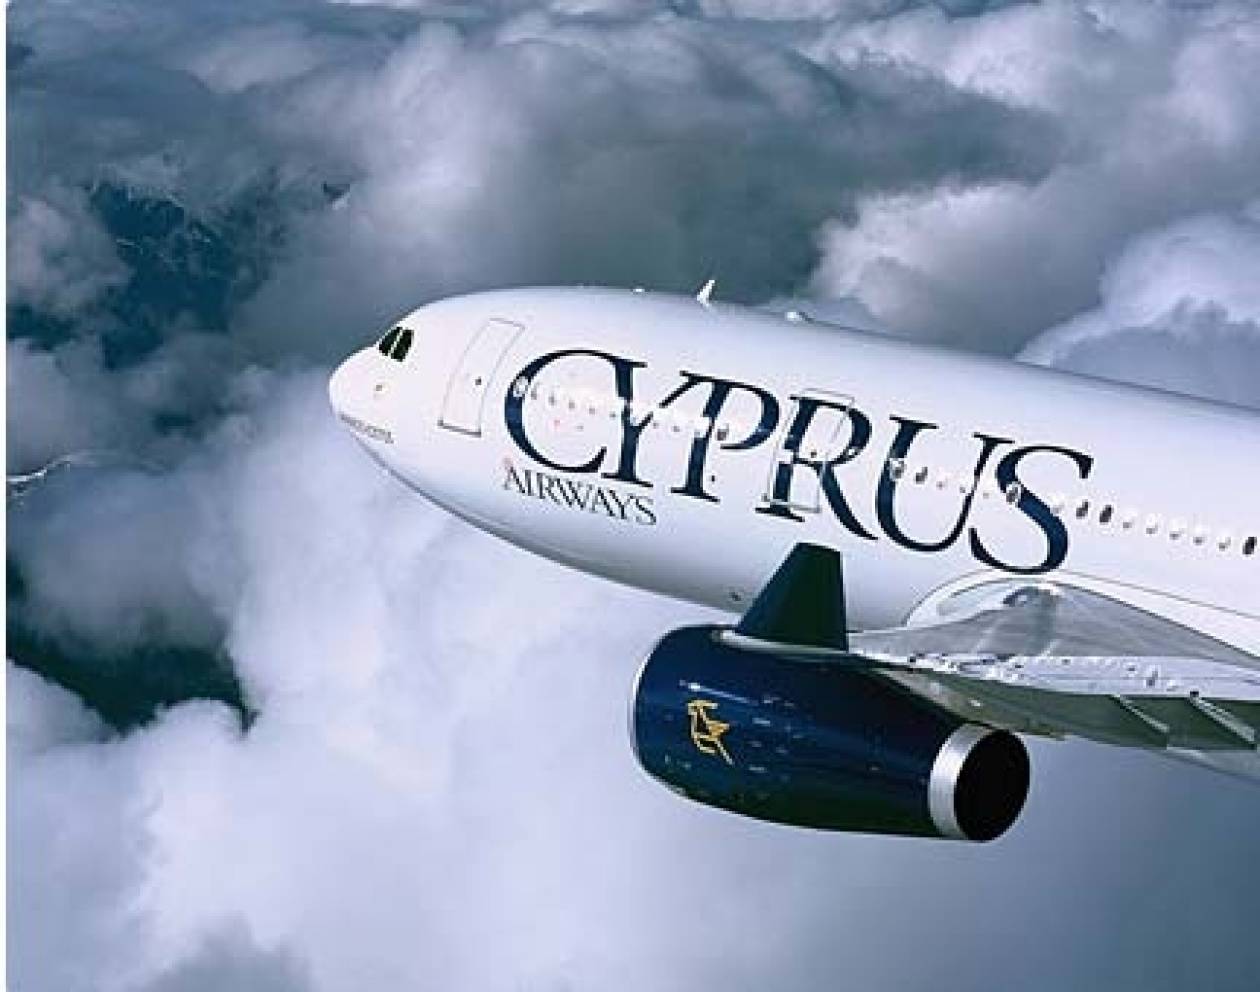 Κυπριακές Αερογραμμές: Κανονικά οι πτήσεις Λάρνακα - Βηρυτός